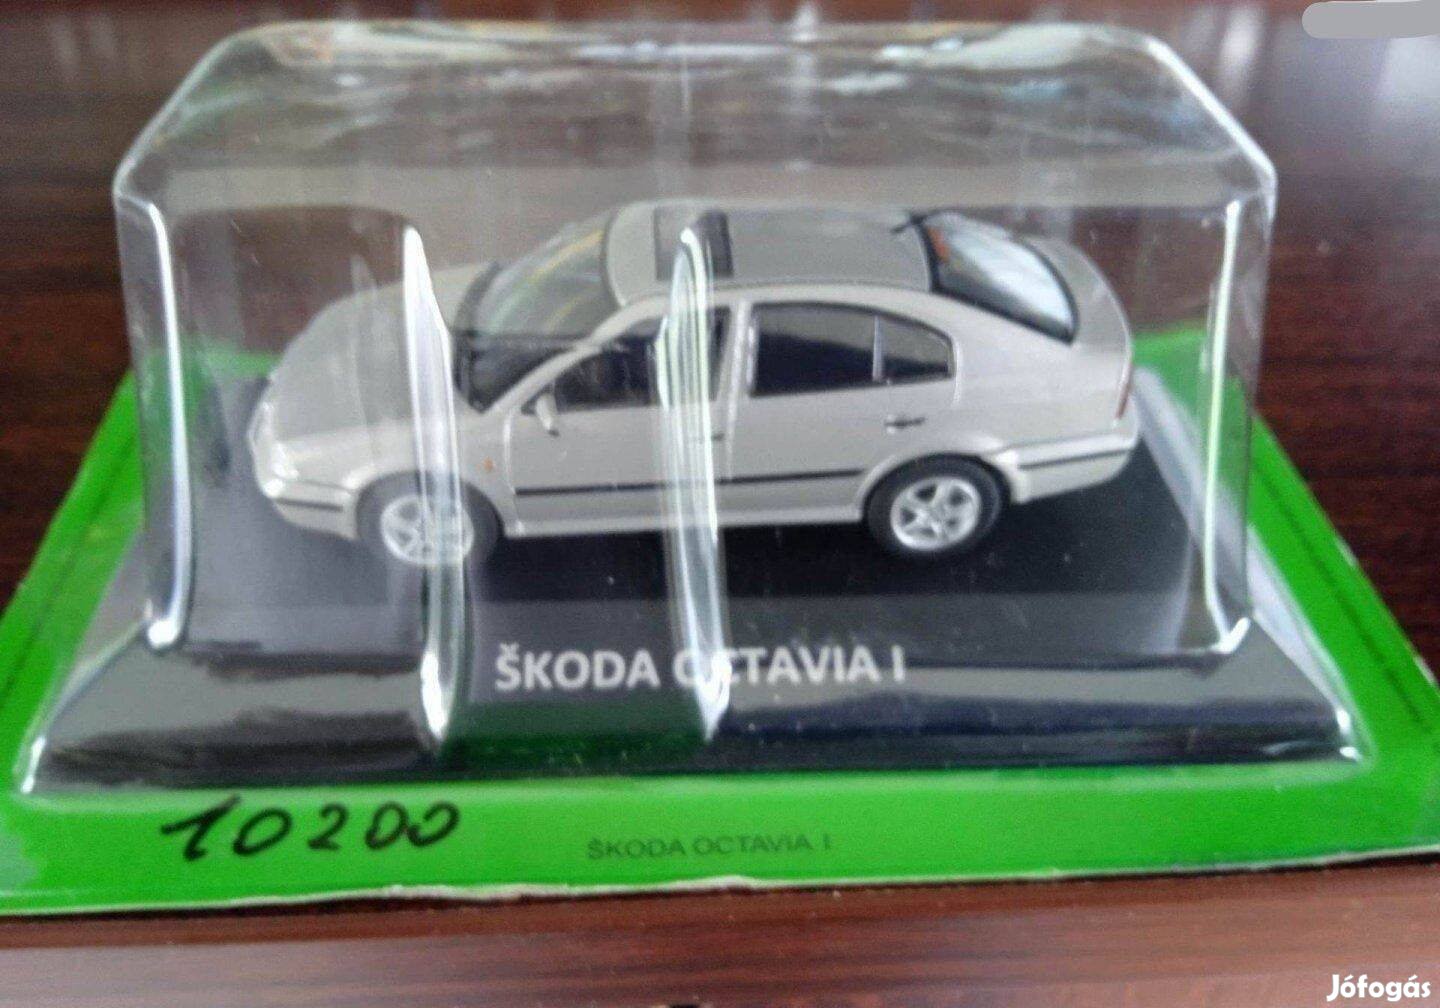 Skoda Octavia I kisauto modell 1/43 Eladó